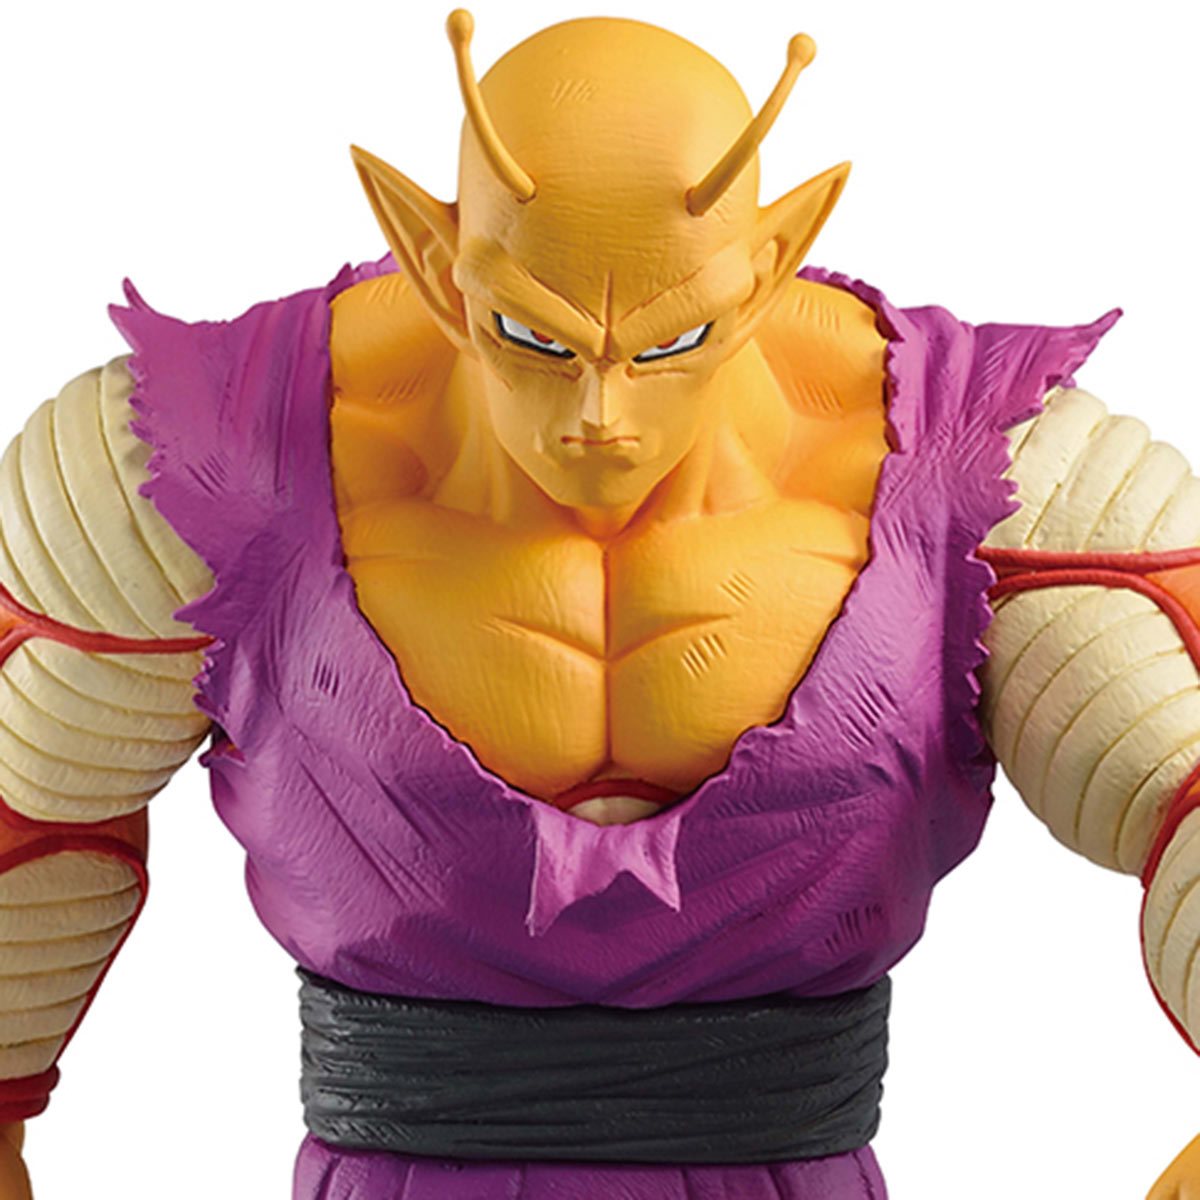 Bandai Tamashii Nations Vs Omnibus Beast: Dragon Ball Super Hero - Orange Piccolo Estatua Ichibansho